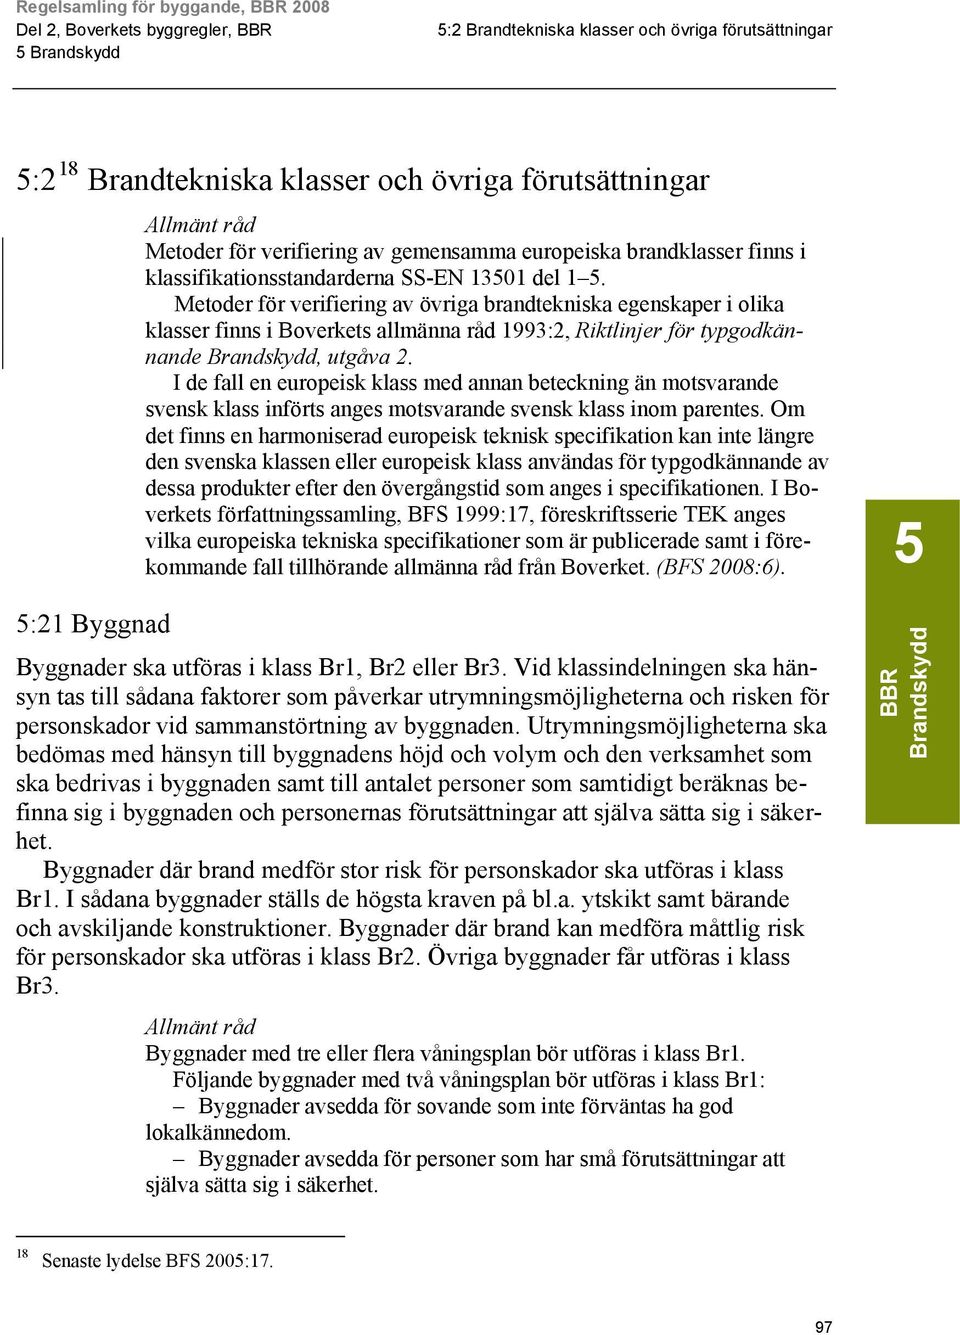 Metoder för verifiering av övriga brandtekniska egenskaper i olika klasser finns i Boverkets allmänna råd 1993:2, Riktlinjer för typgodkännande Brandskydd, utgåva 2.